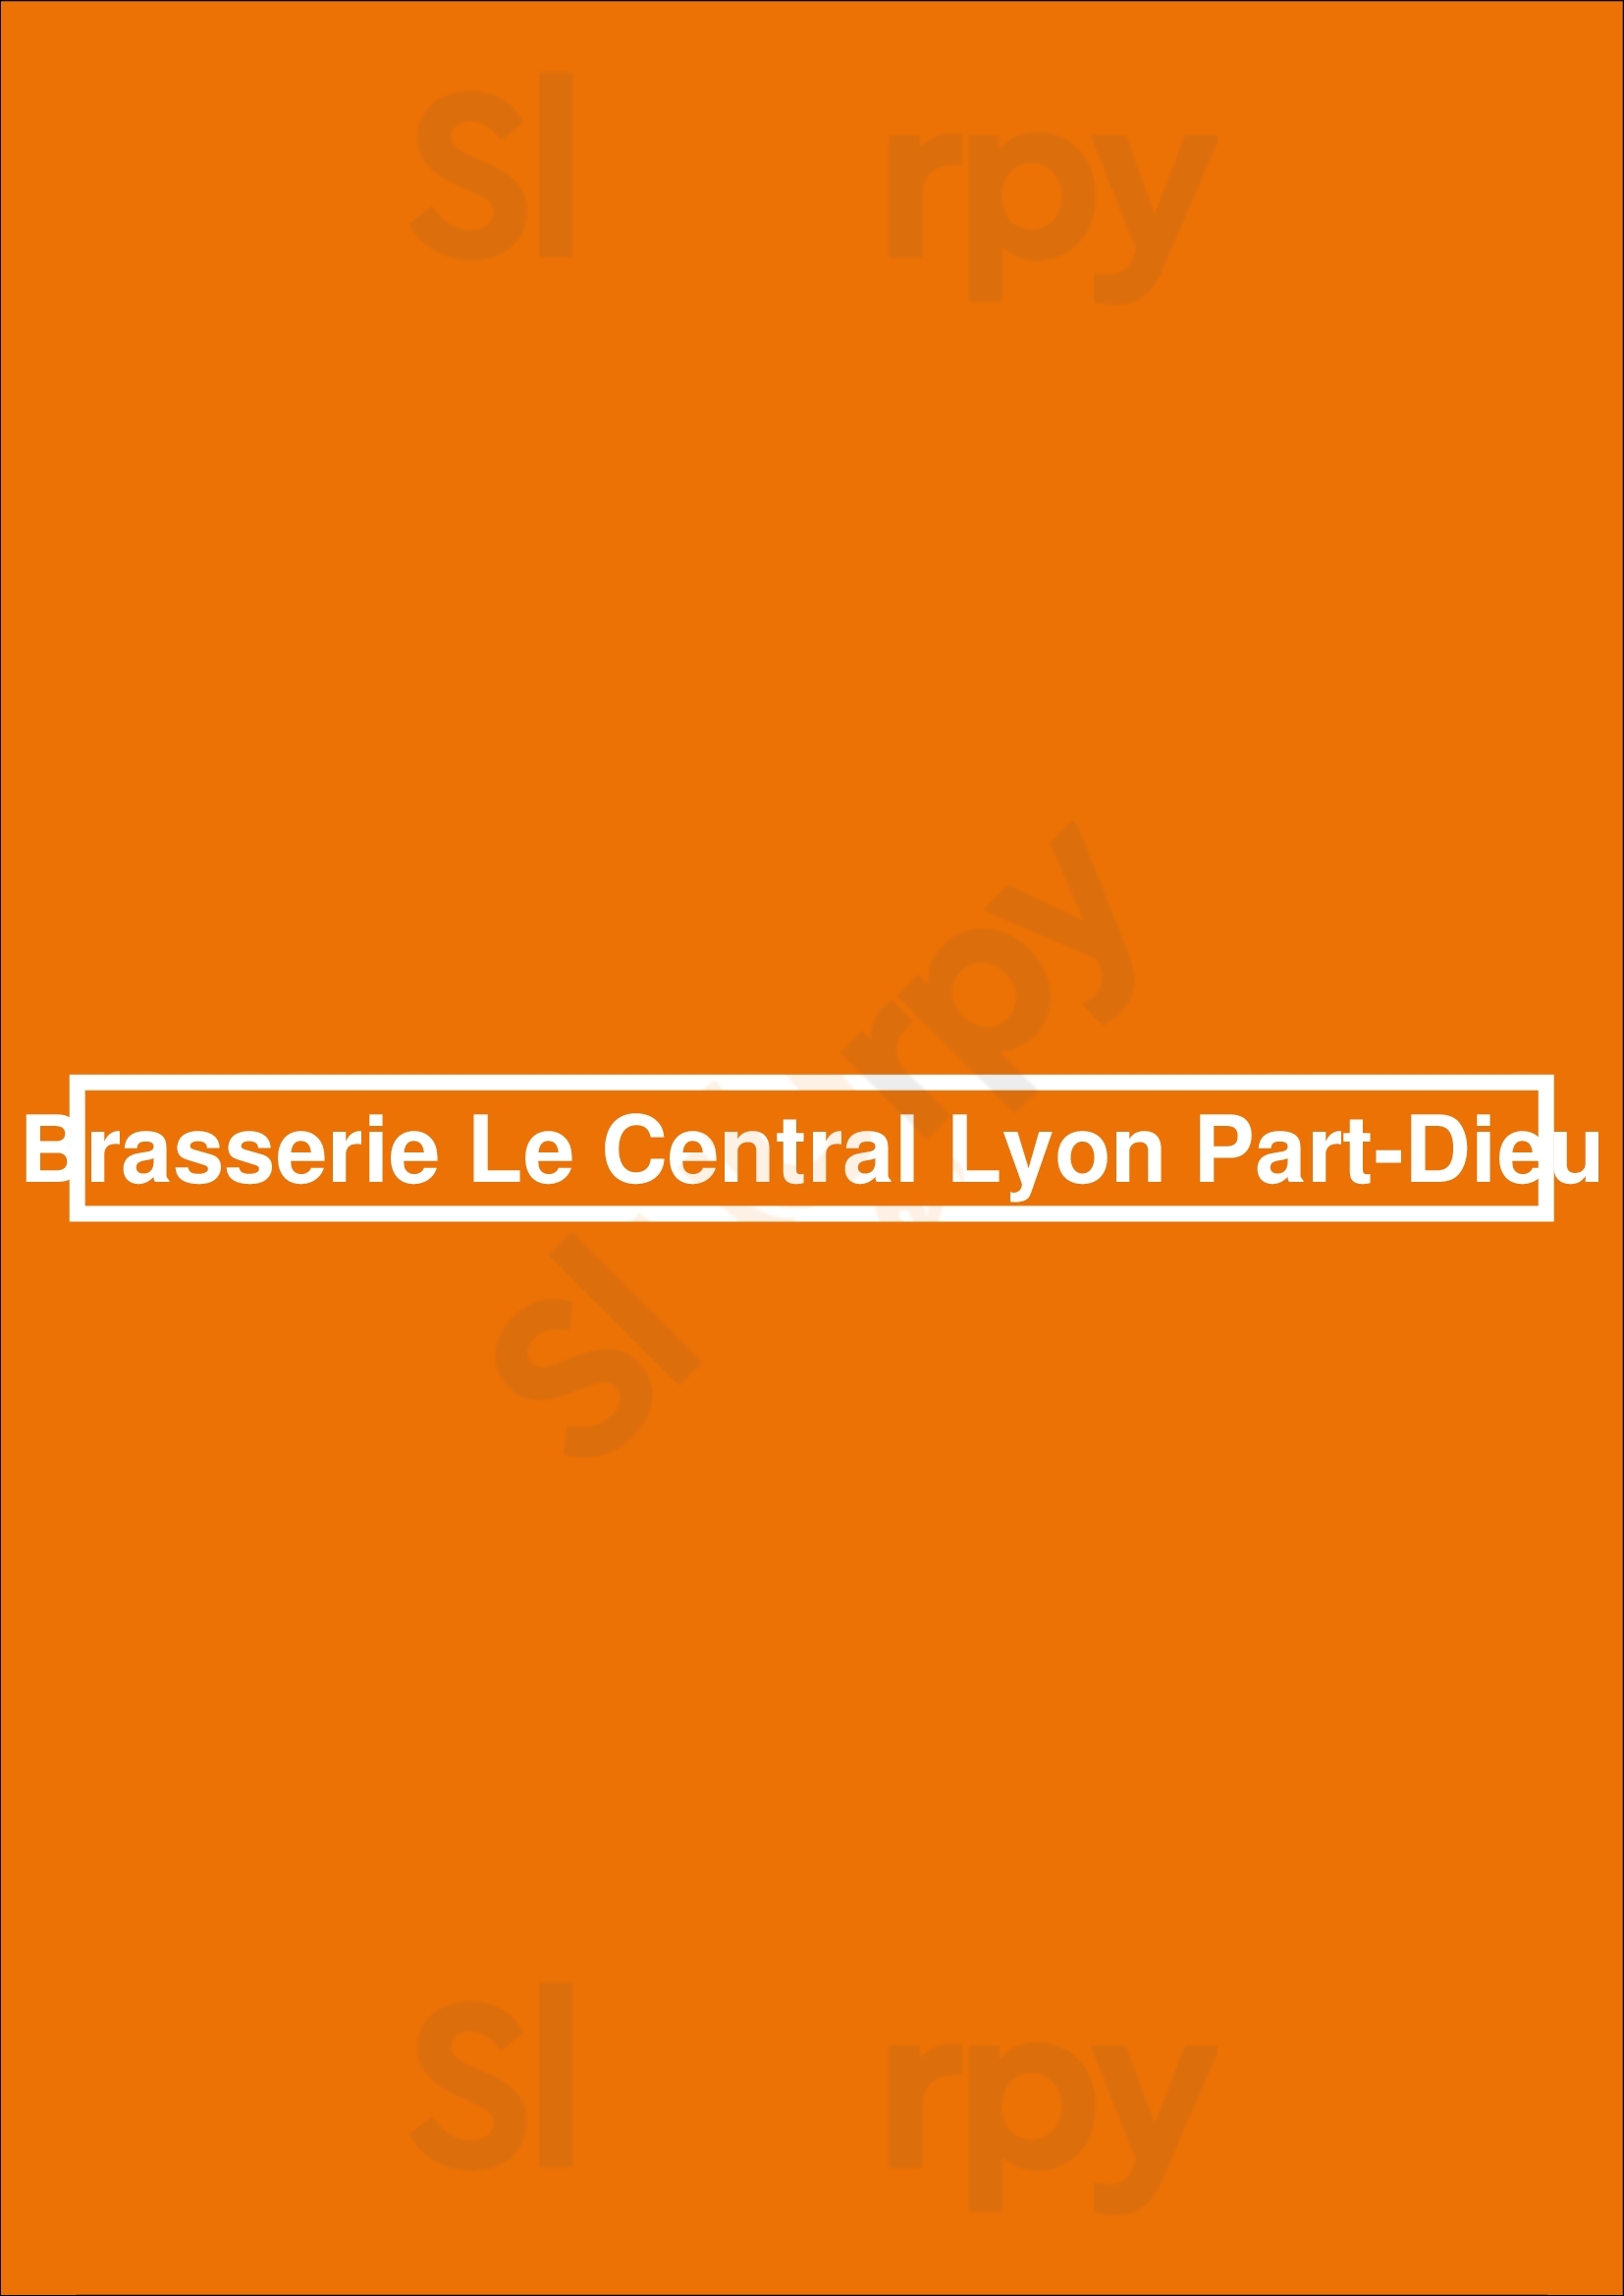 Brasserie Le Central Lyon Part-dieu Lyon Menu - 1